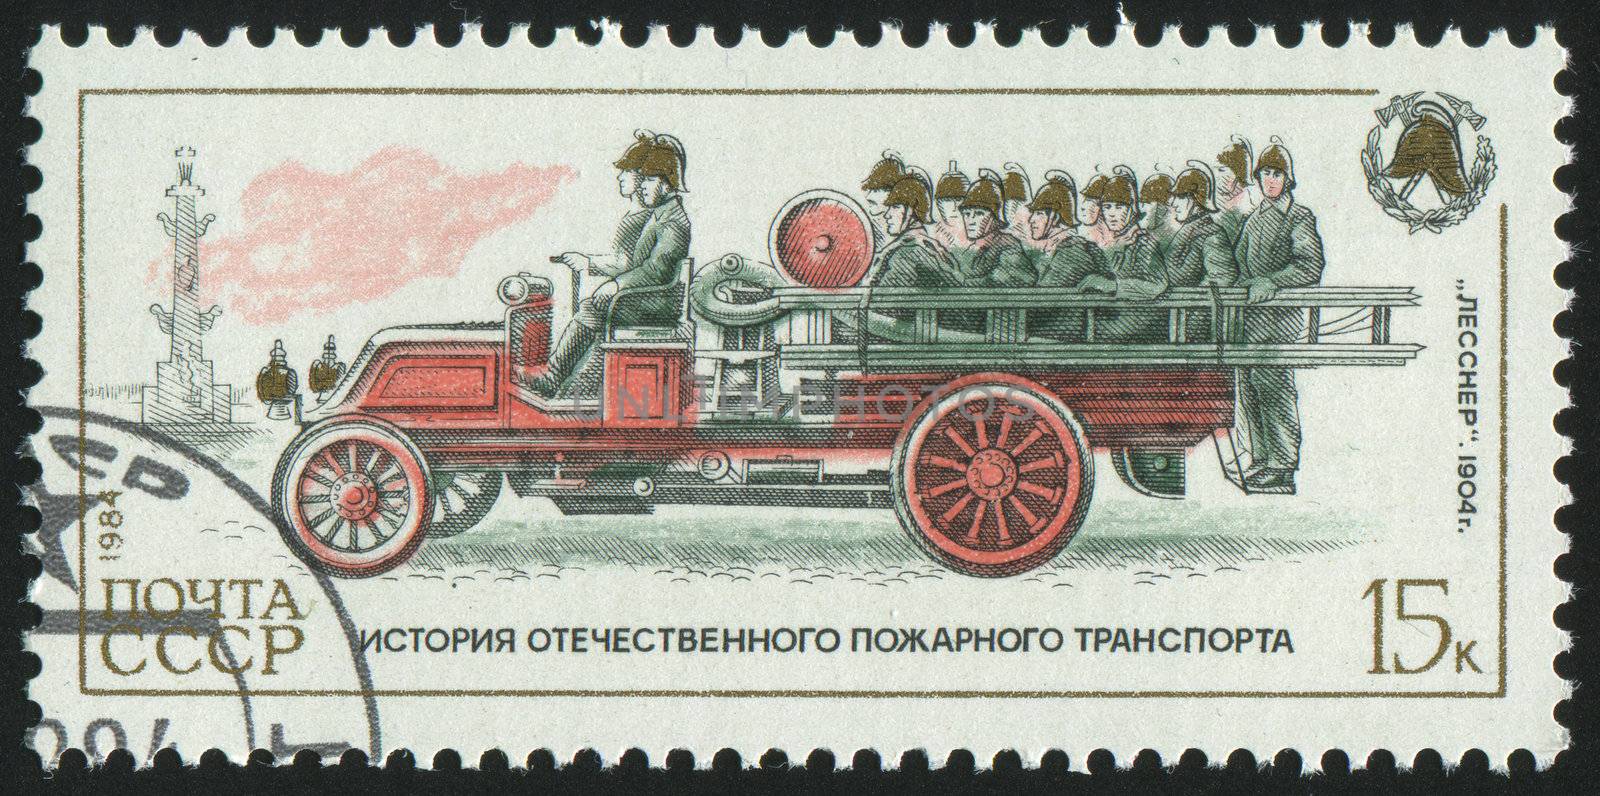 RUSSIA - CIRCA 1984: stamp printed by Russia, shows retro firetruck, circa 1984.